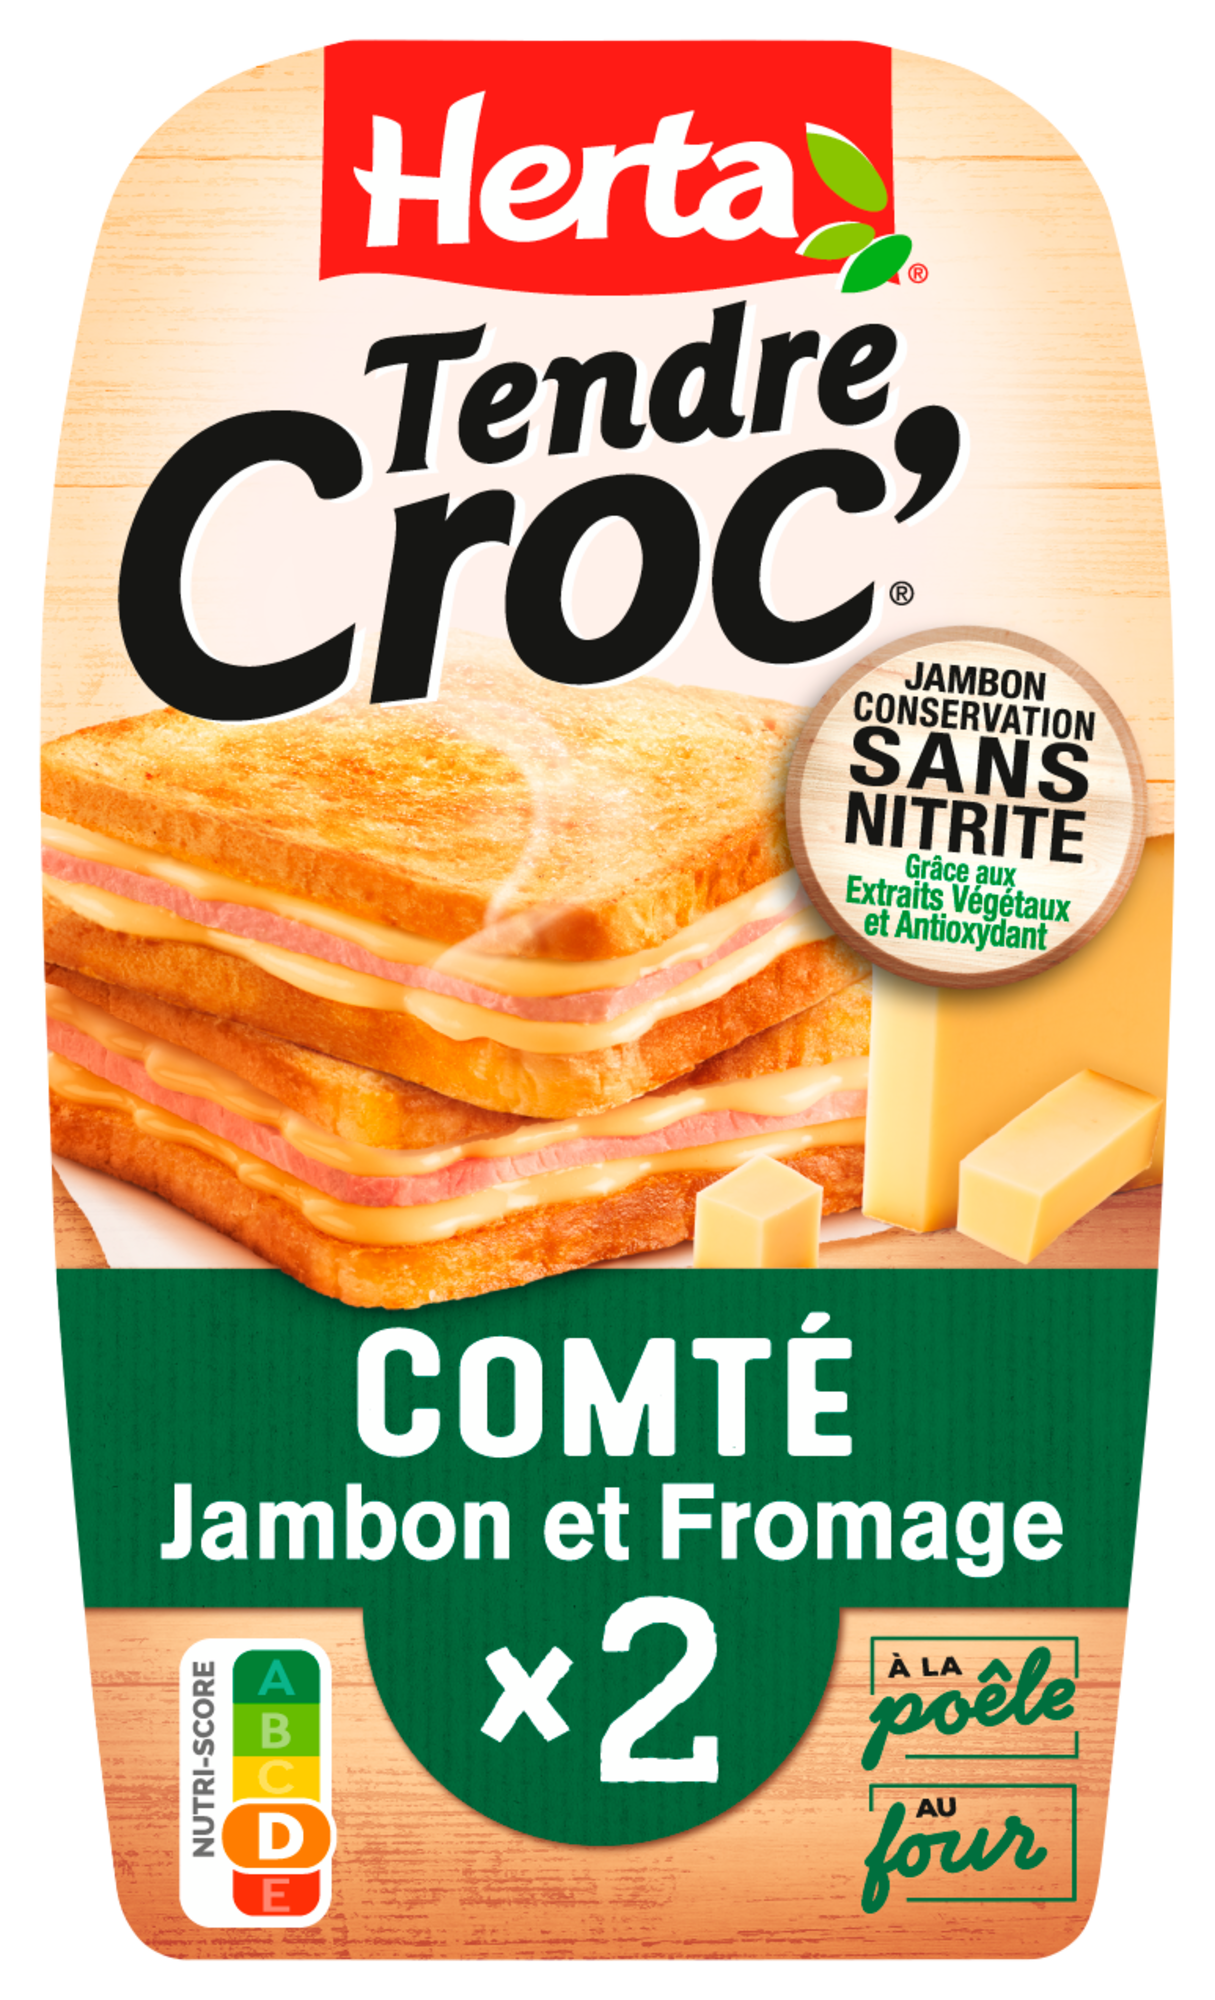 Tendre Croc' Comté & Jambon